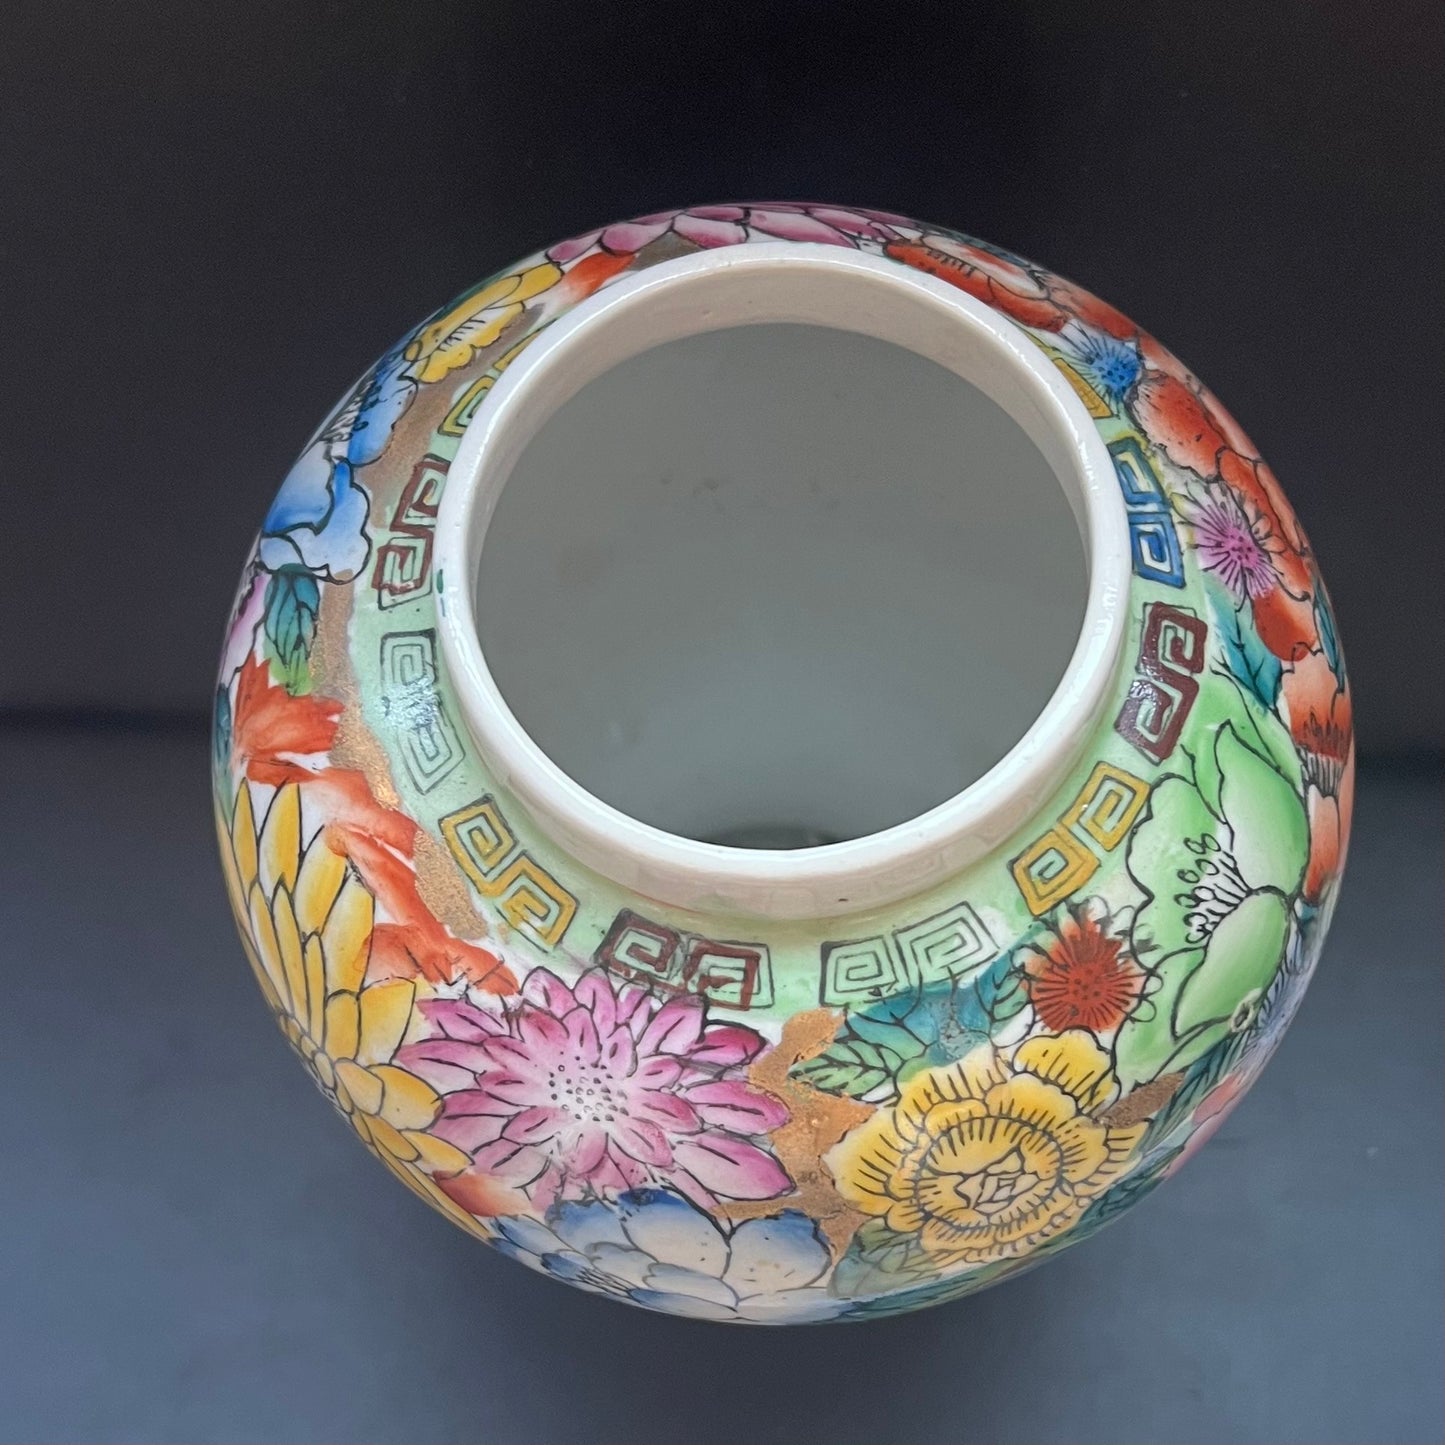 20 世纪末期中国景德镇粉彩百花纹罐或花瓶，带有伪造的乾隆款